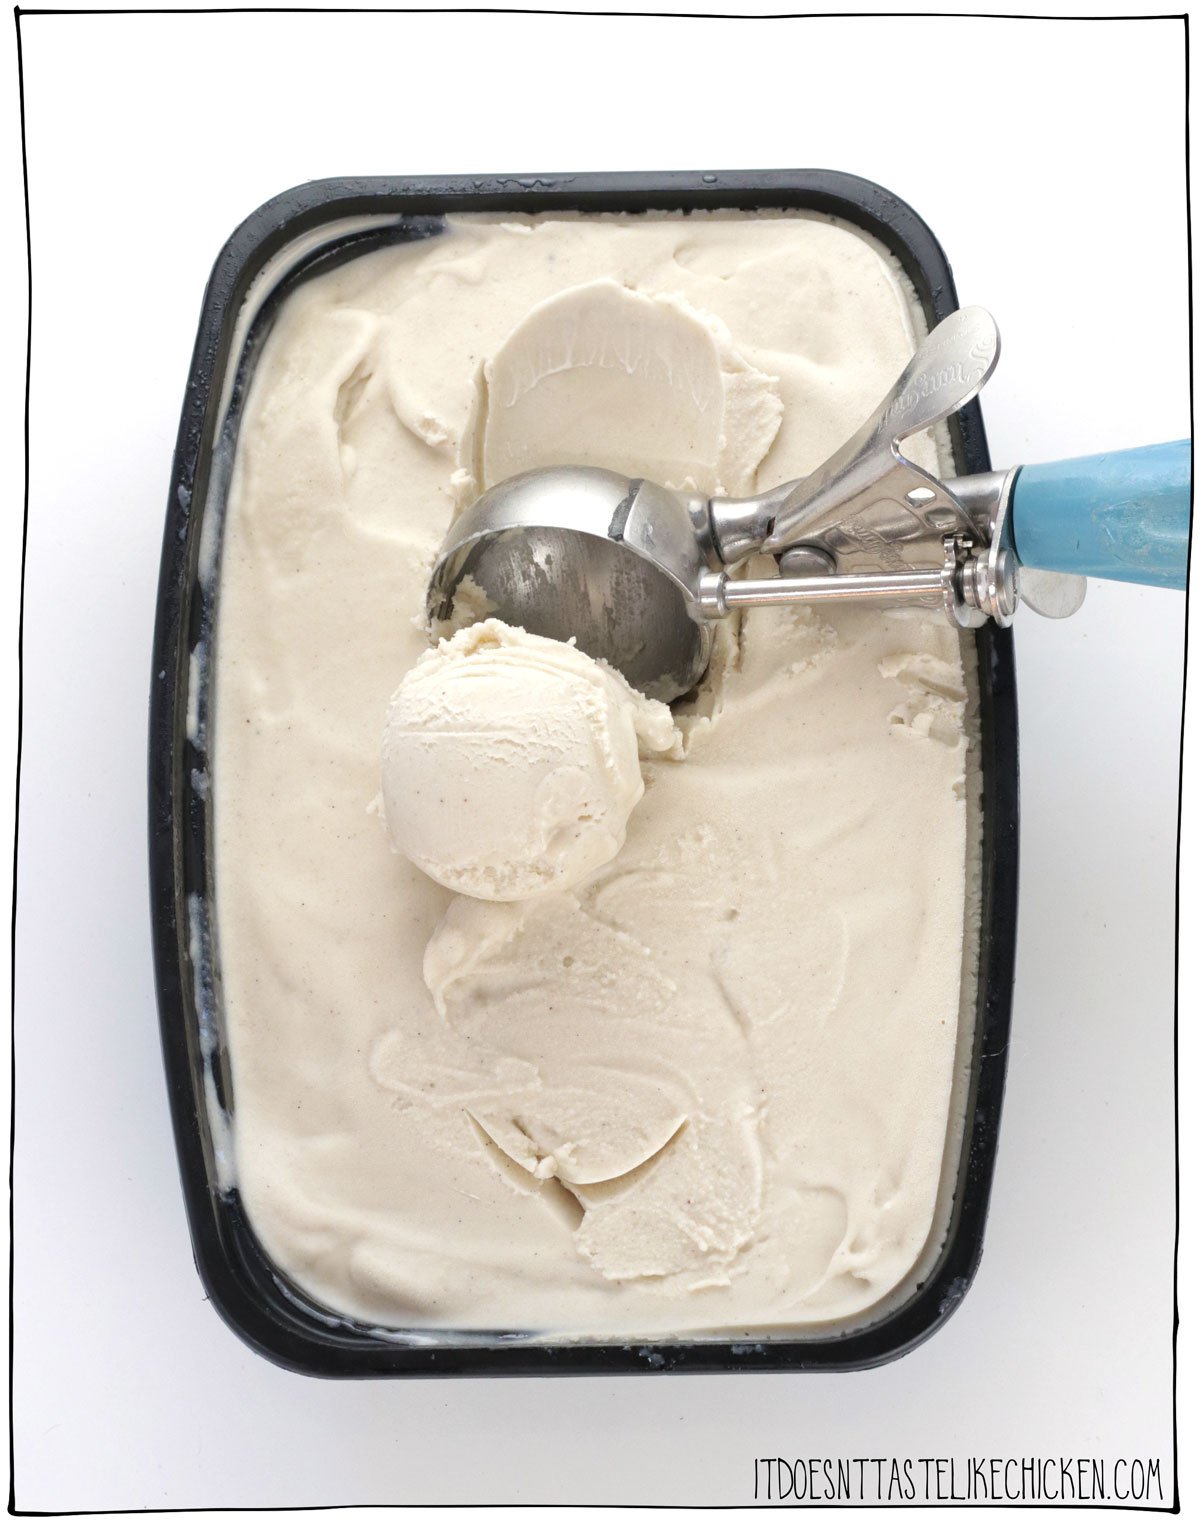 Seulement 4 ingrédients pour faire la MEILLEURE glace à la vanille vegan !  Cette recette de crème glacée maison est facile à préparer, super riche et crémeuse - c'est la meilleure glace que j'aie jamais goûtée, végétalienne ou non !  #ça n'a pas le goût du poulet #vegan 